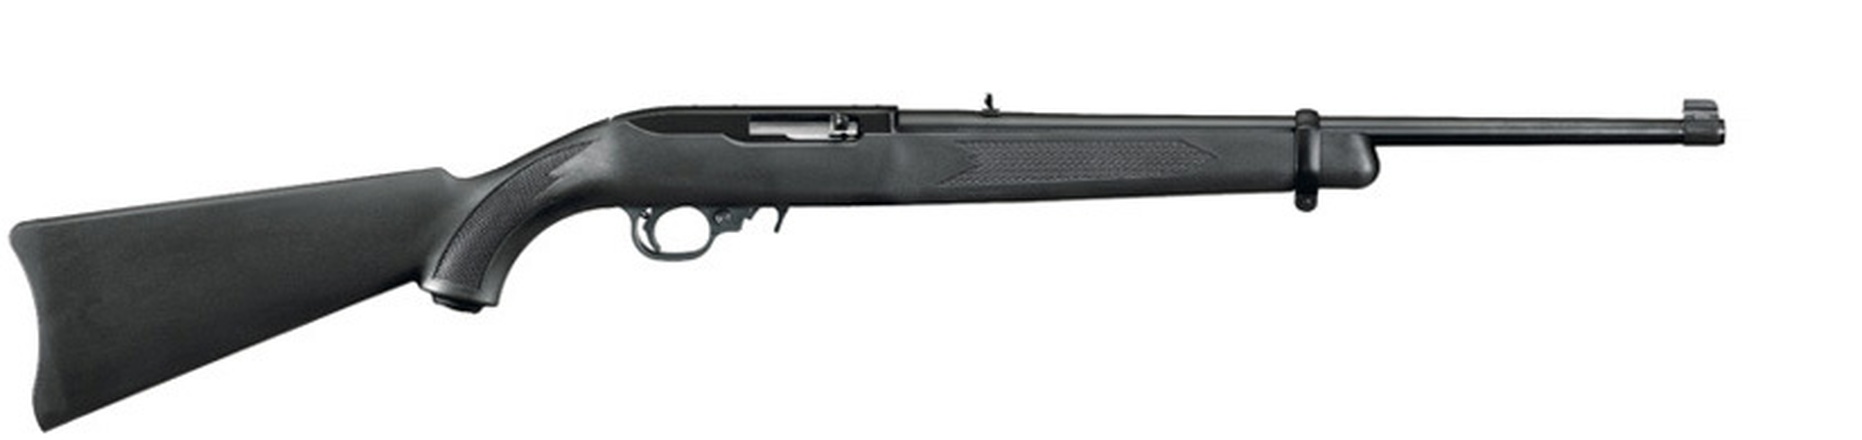 Don shot - Ruger 10/22 Carbine